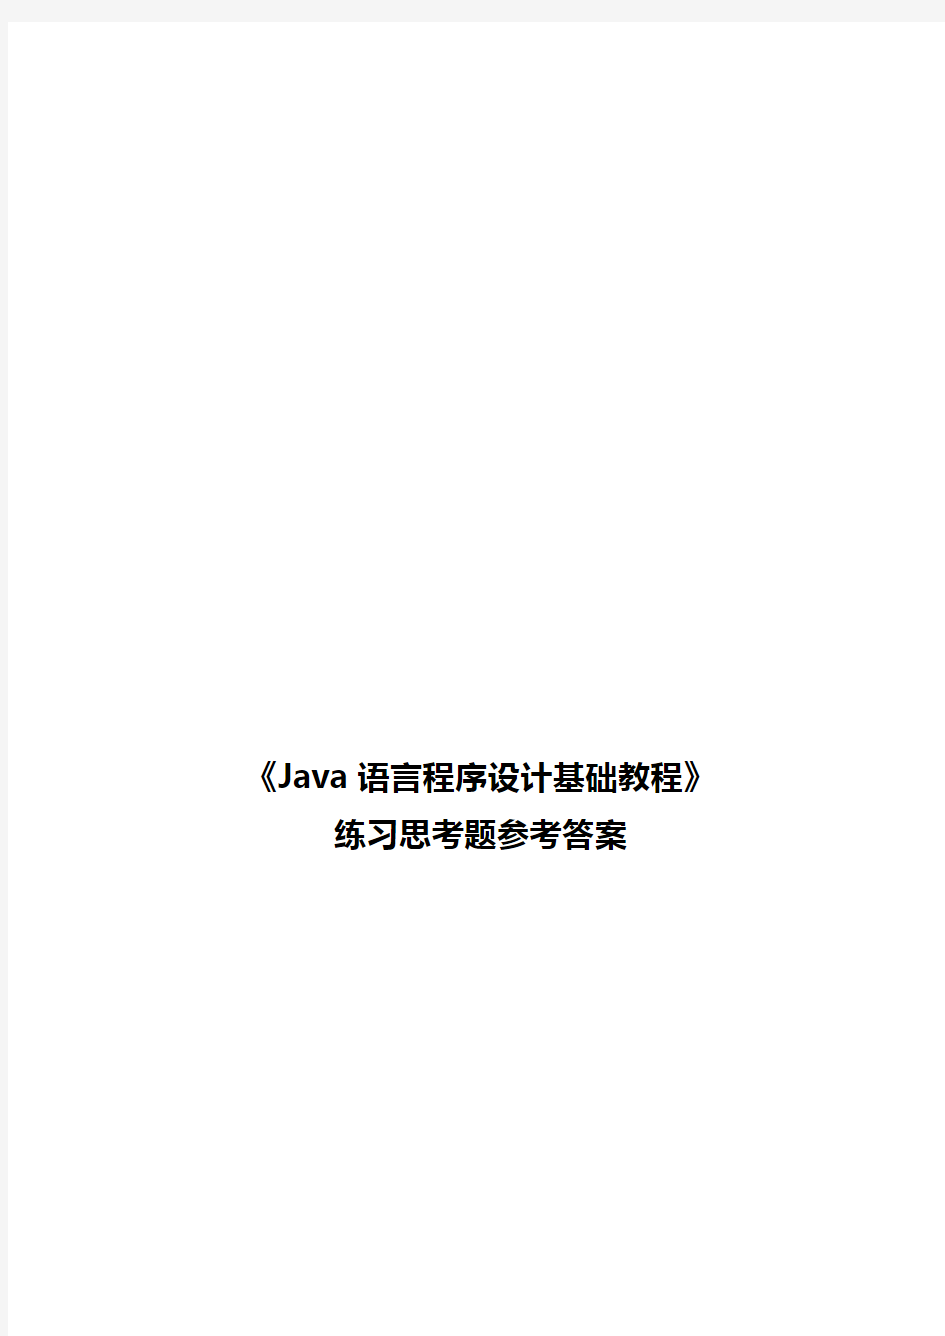 《Java语言程序设计基础教程》习题解答